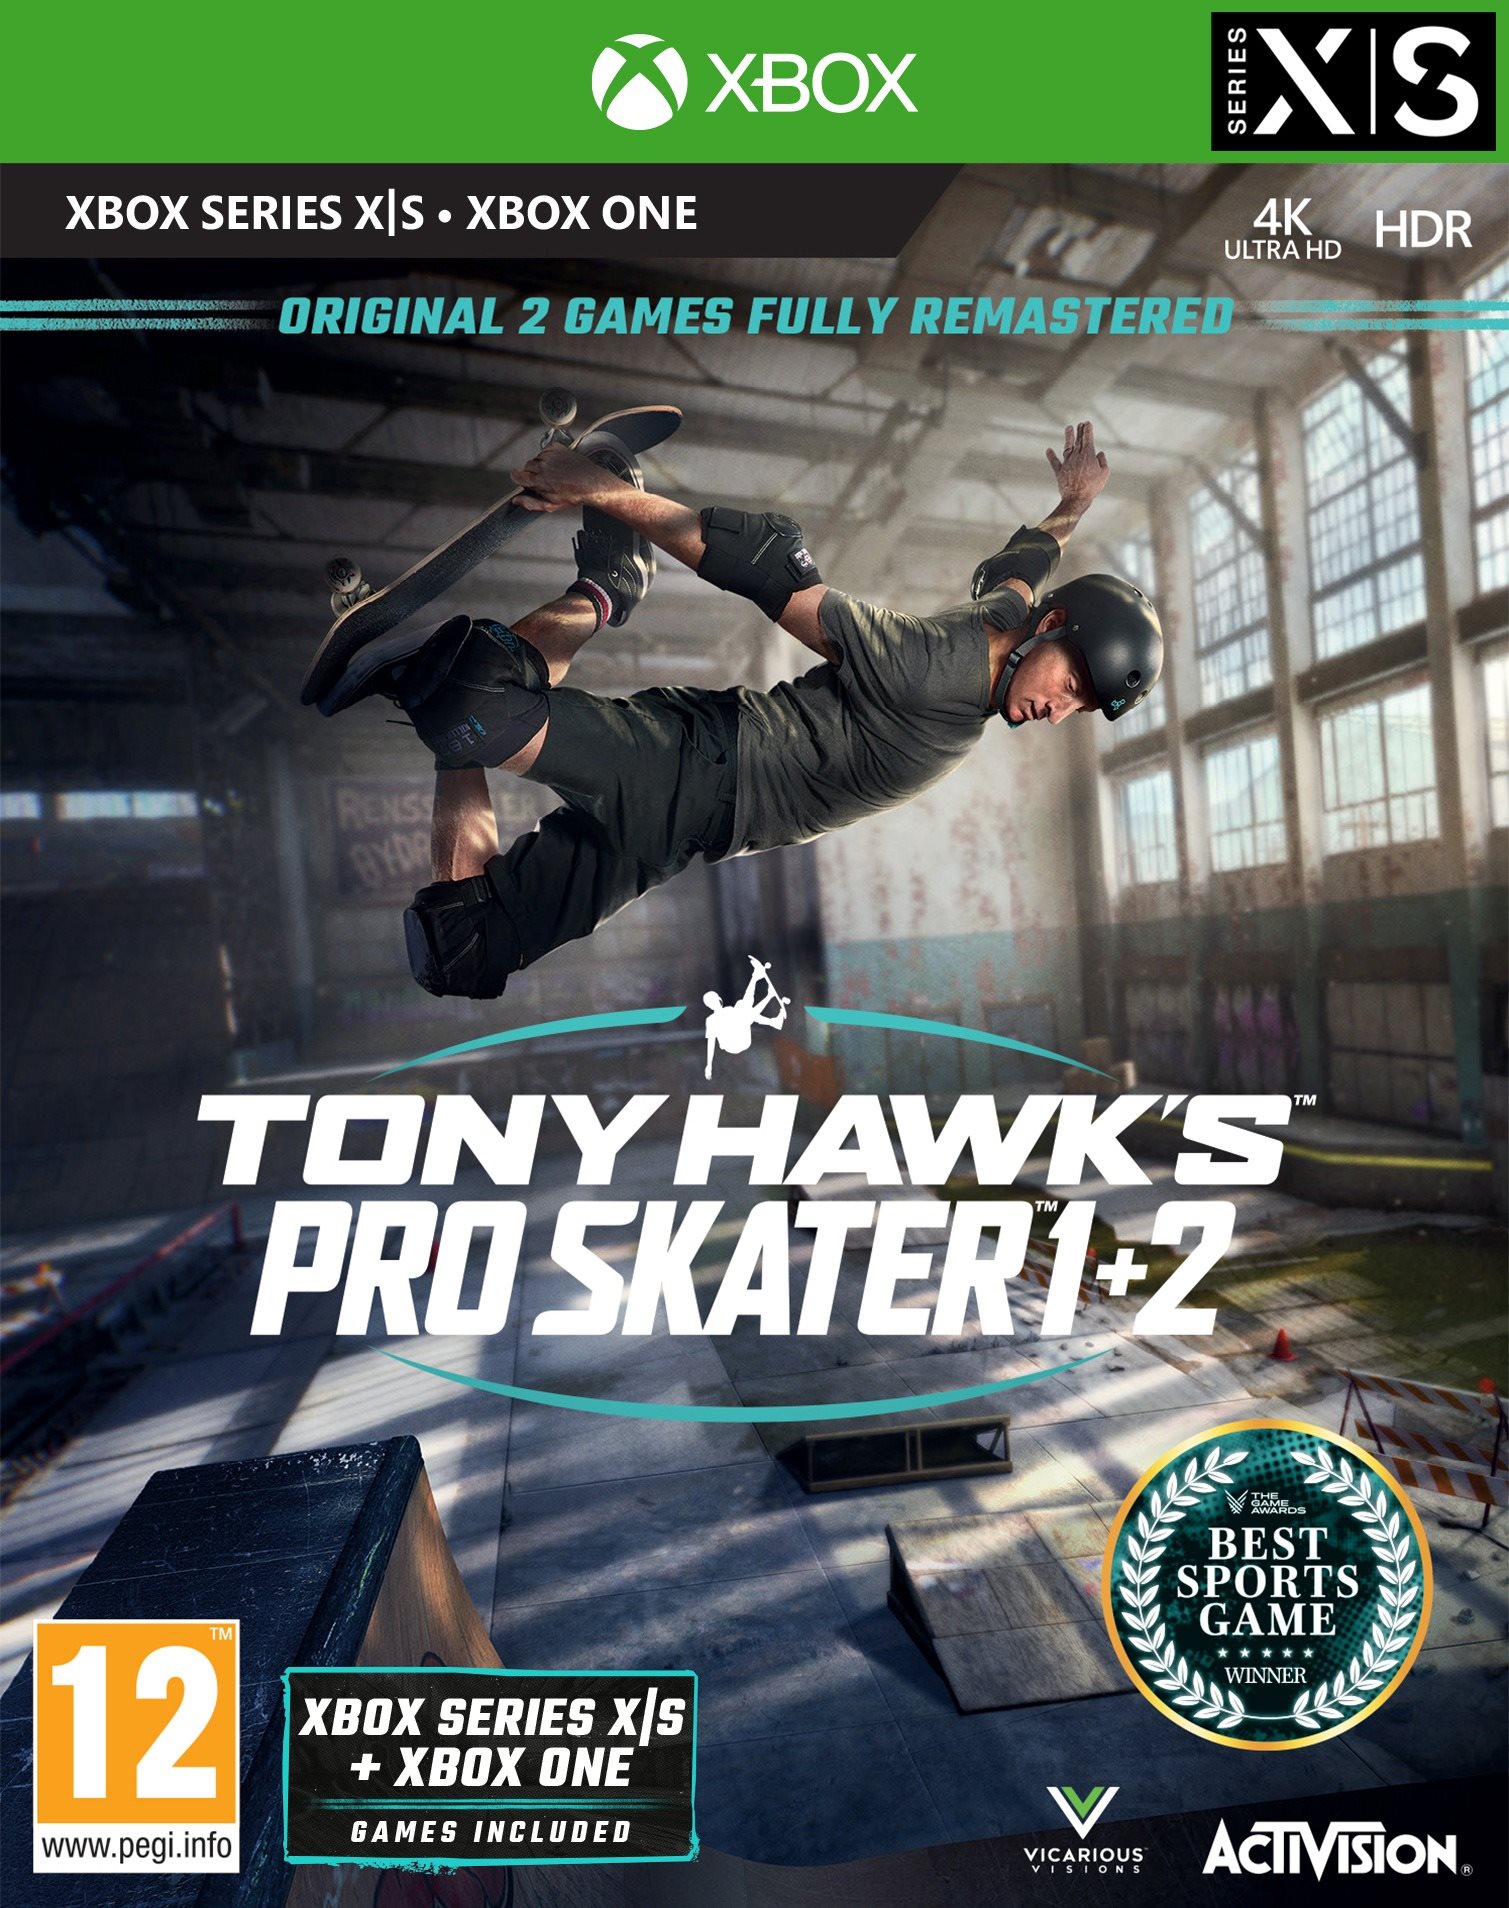 Tony Hawks Pro Skater 1 + 2 - Xbox